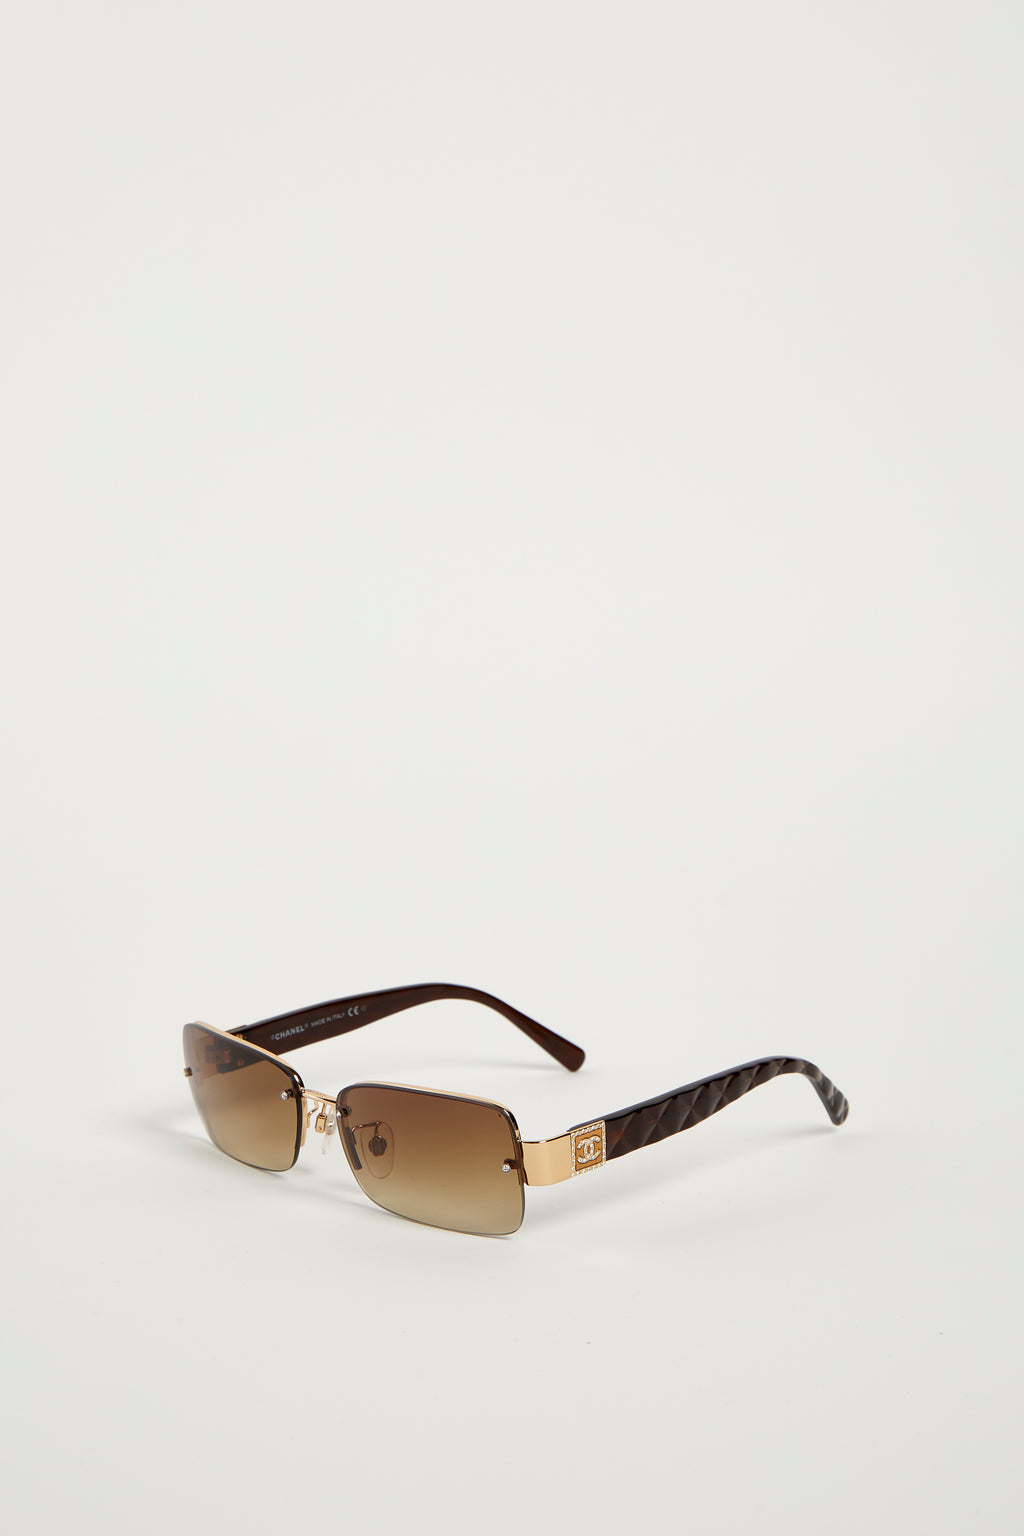 2000s Chanel Brown CC Sunglasses